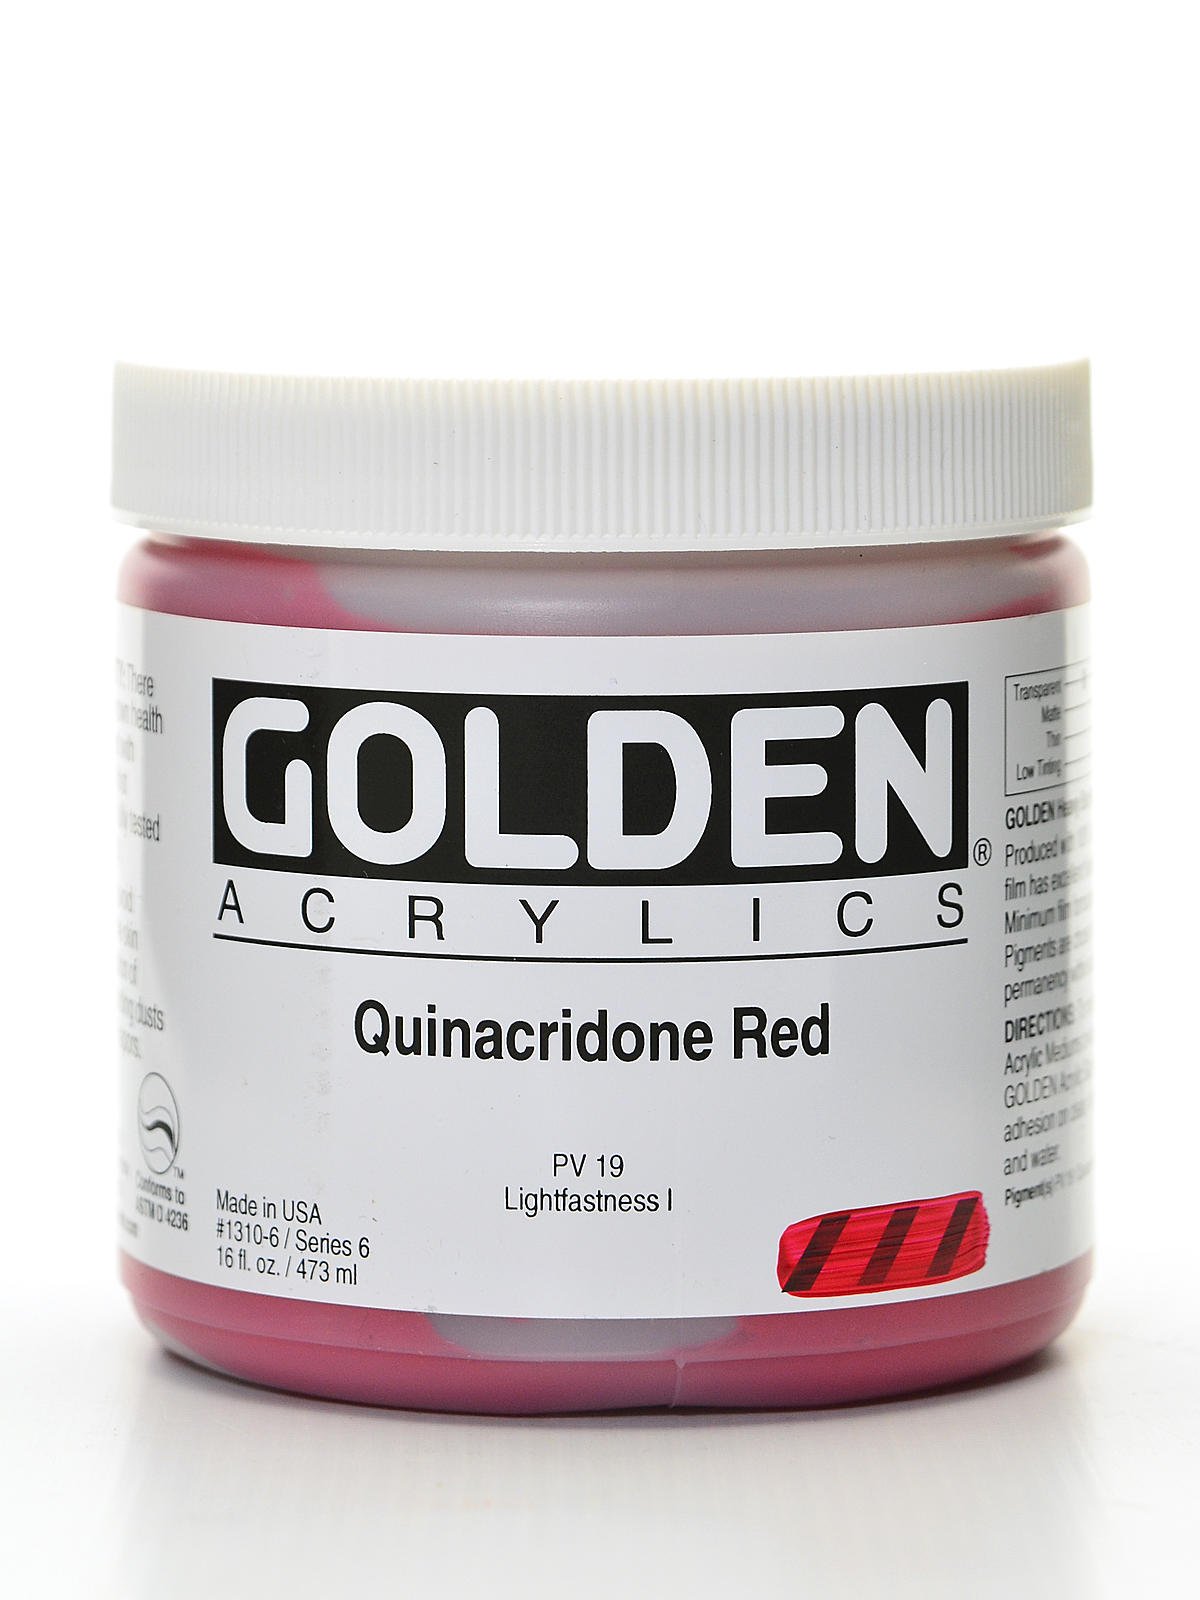 Quinacridone Red